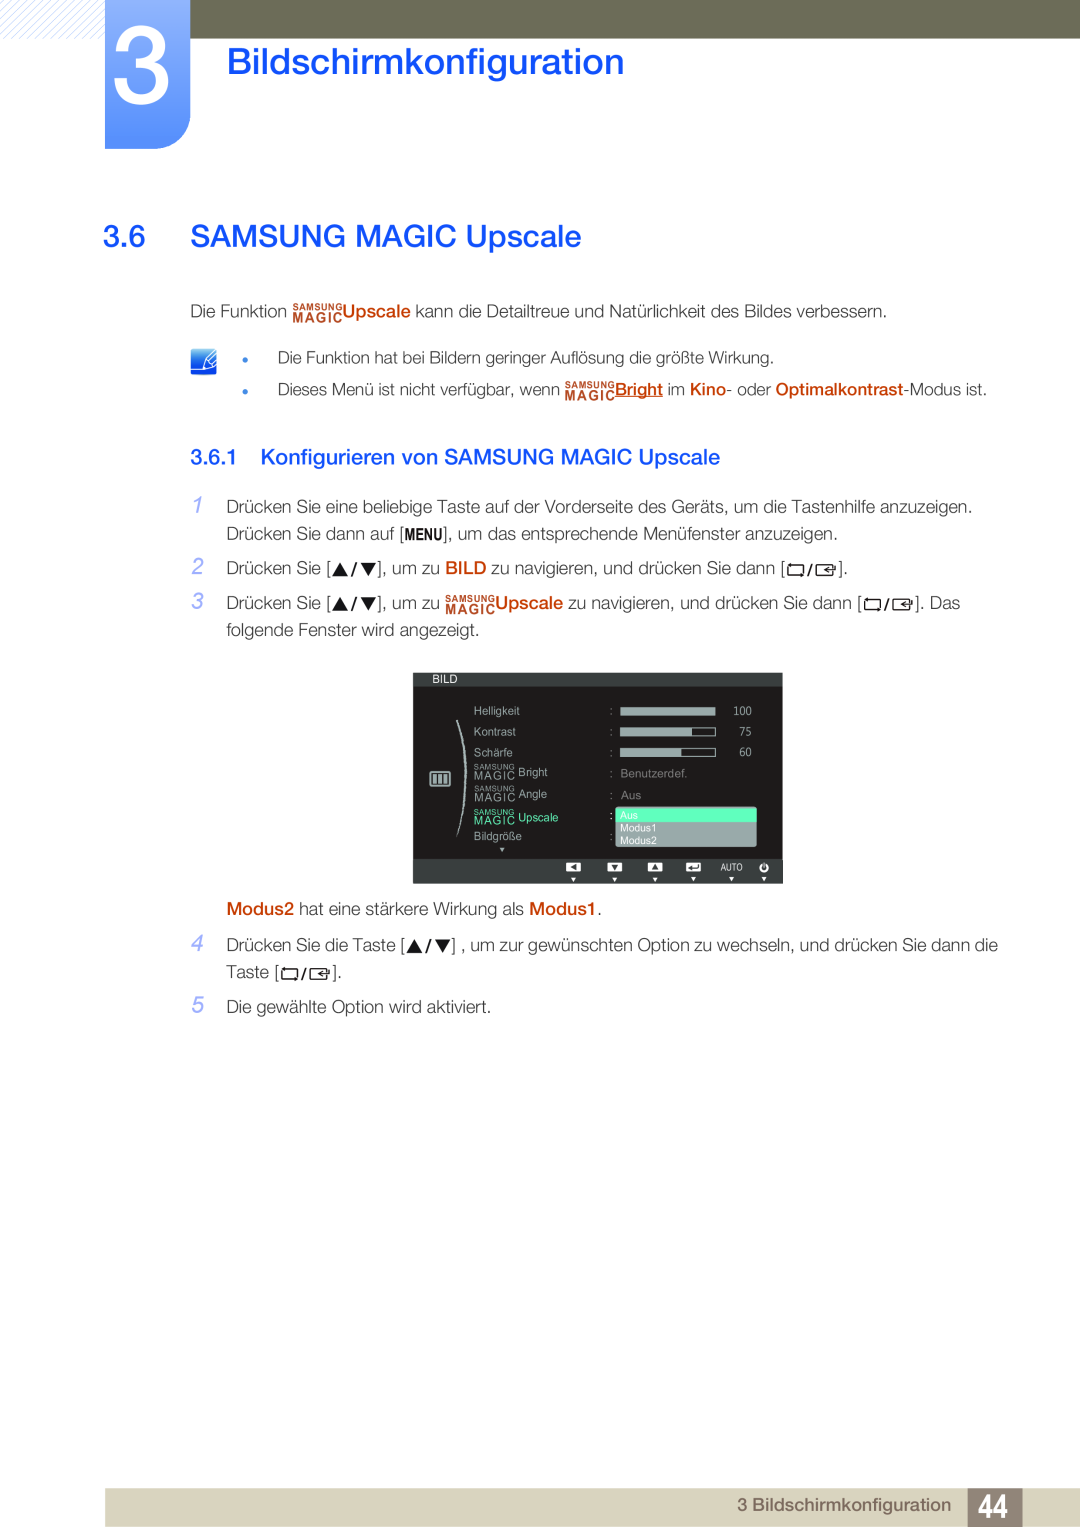 Samsung LS24C45KBW/EN, LS19C45KMRV/EN, LS22C45KMSV/EN Konfigurieren von SAMSUNG MAGIC Upscale, Bildschirmkonfiguration 